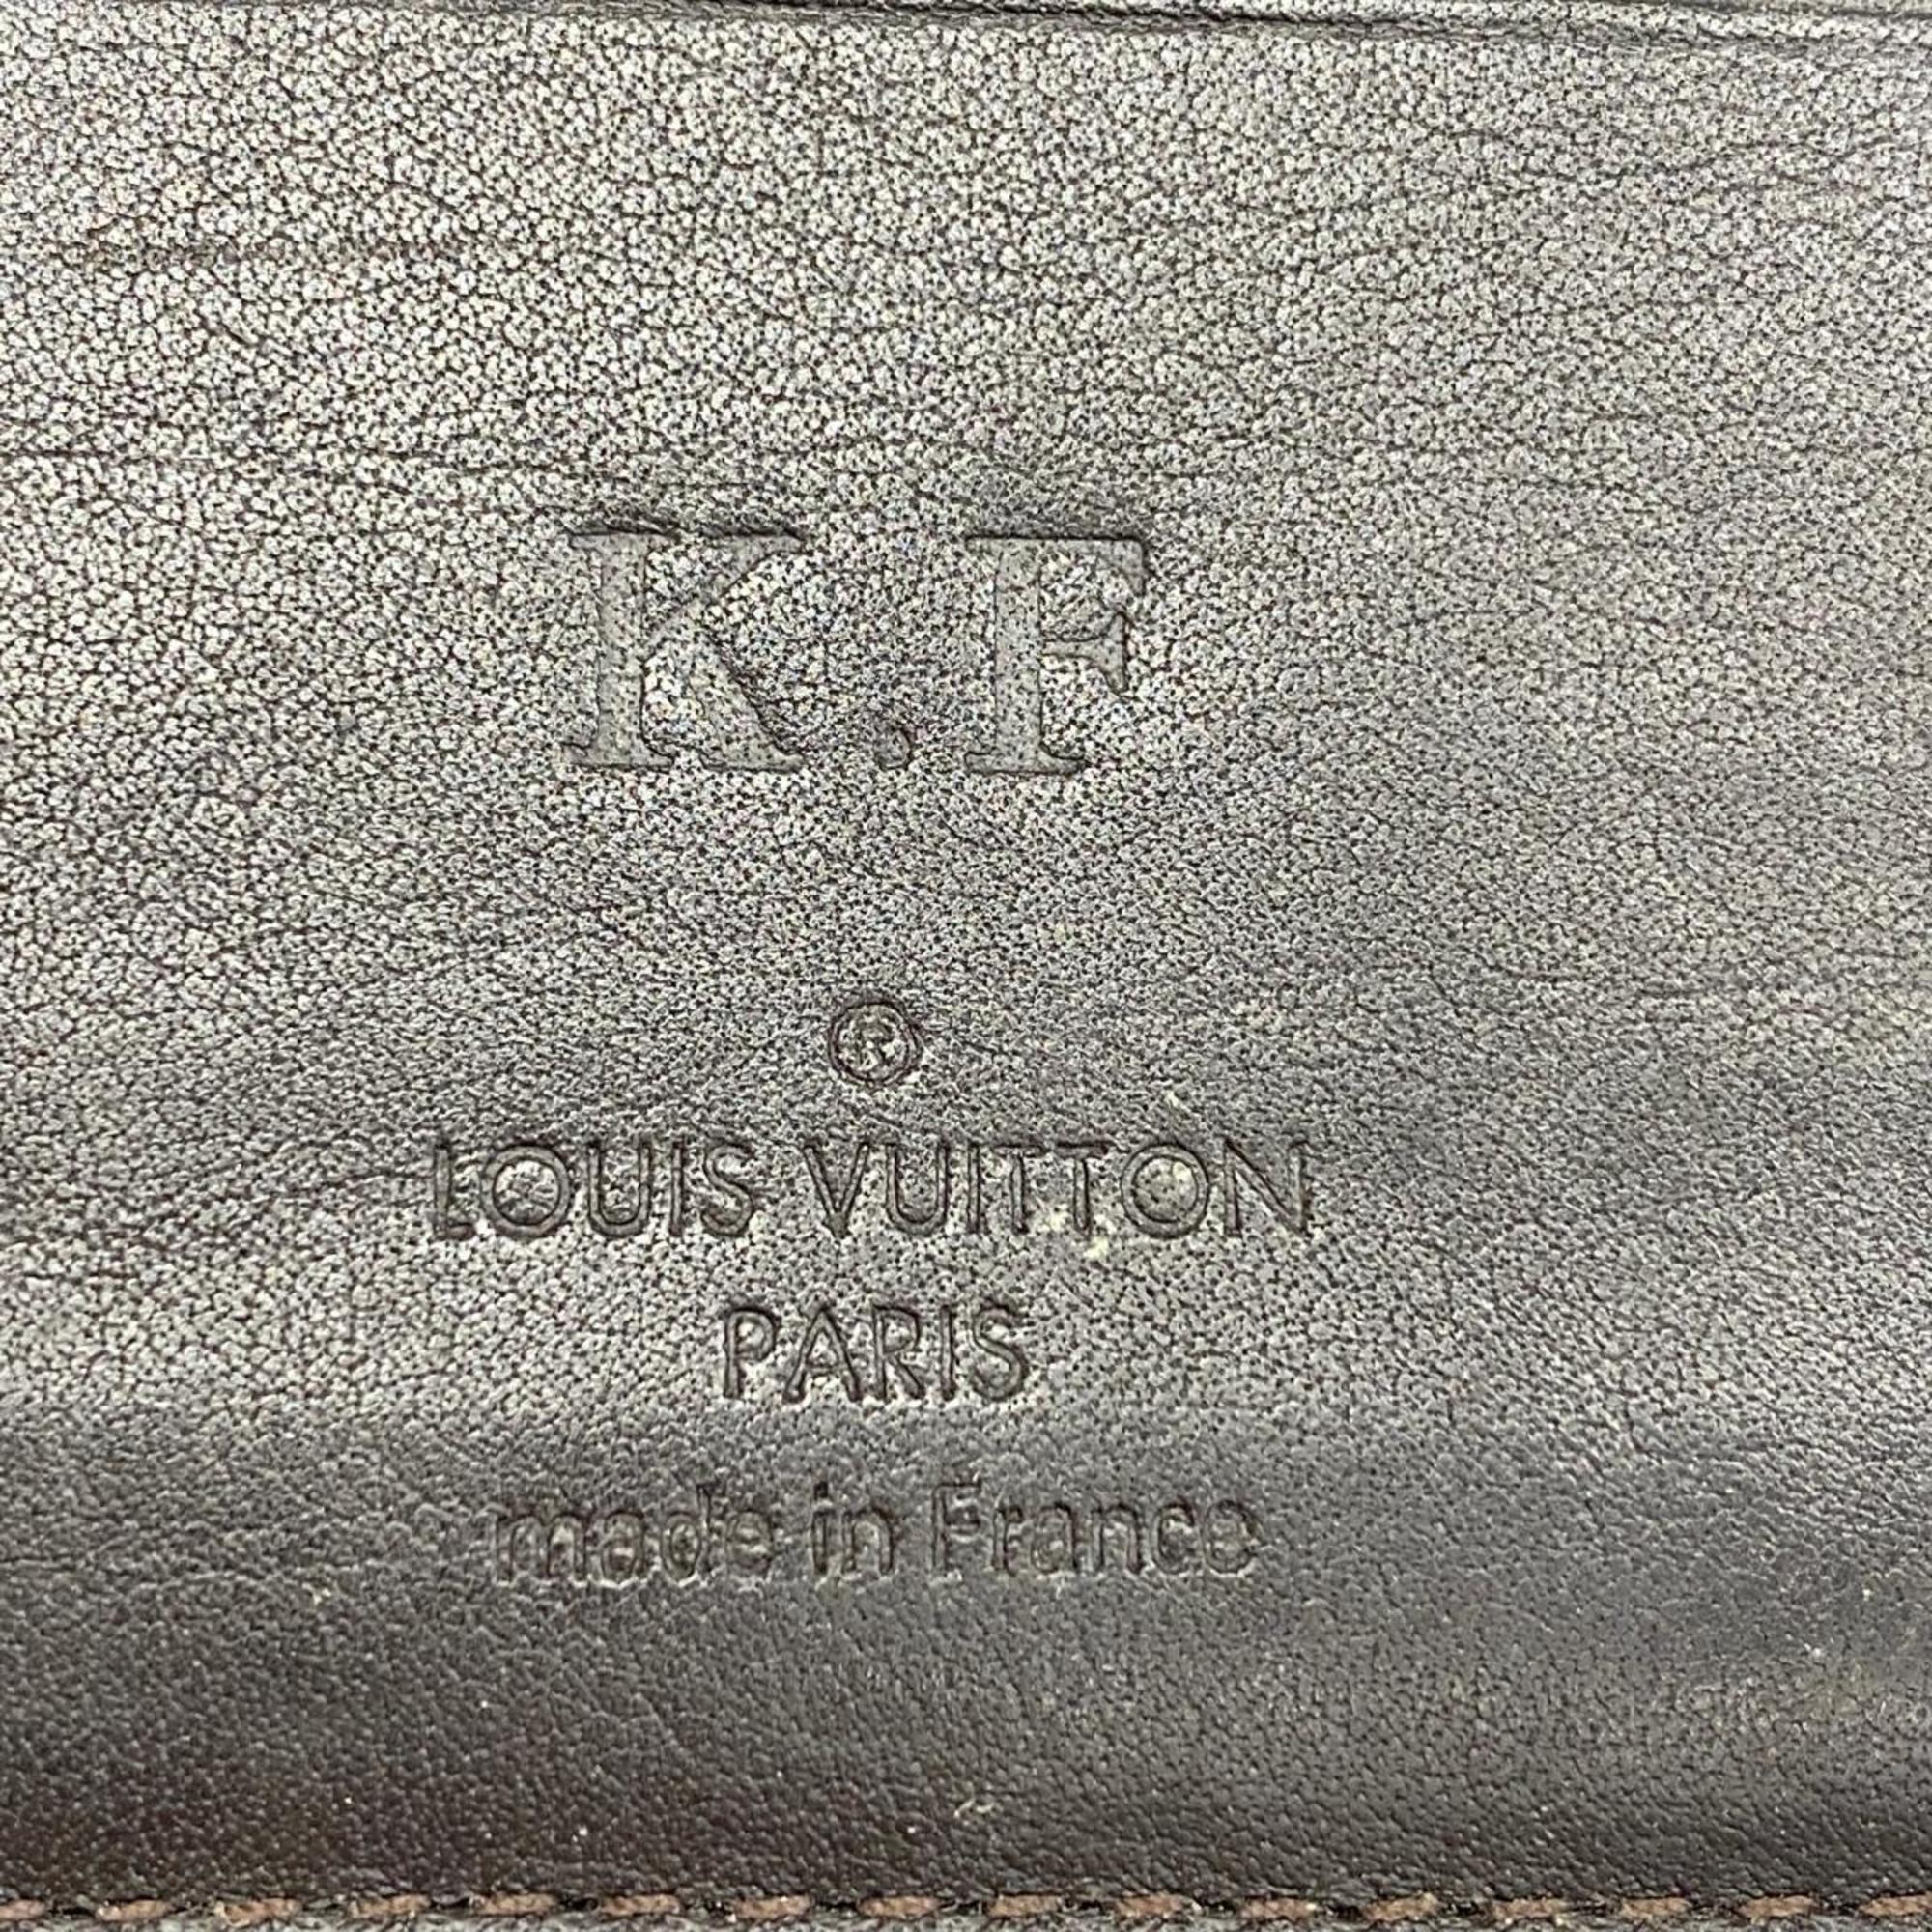 ルイ・ヴィトン(Louis Vuitton) ルイ・ヴィトン 財布 ダミエ・ジェアン ポルトフォイユマルコ N63087 ノワールメンズ